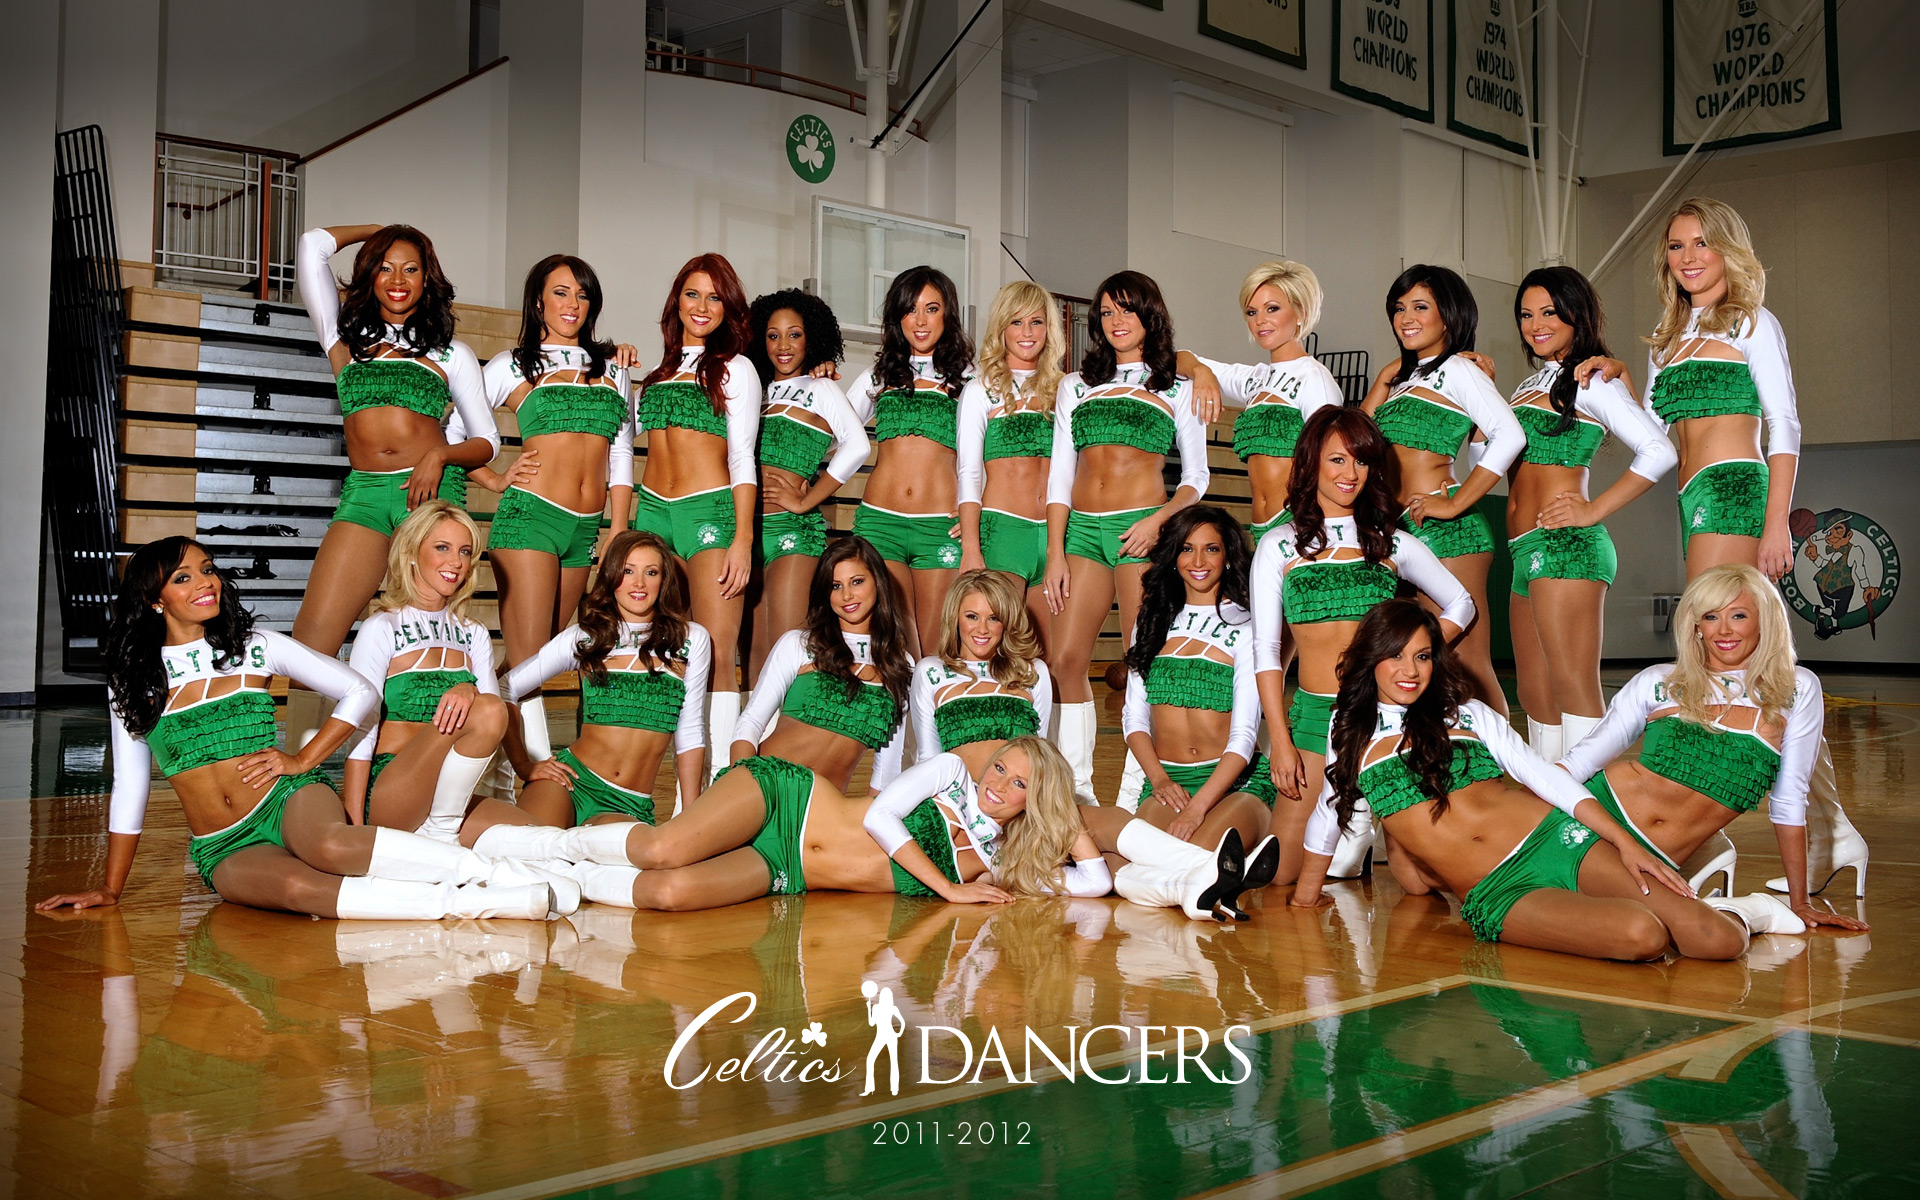 Celtics Dancers Wallpaper